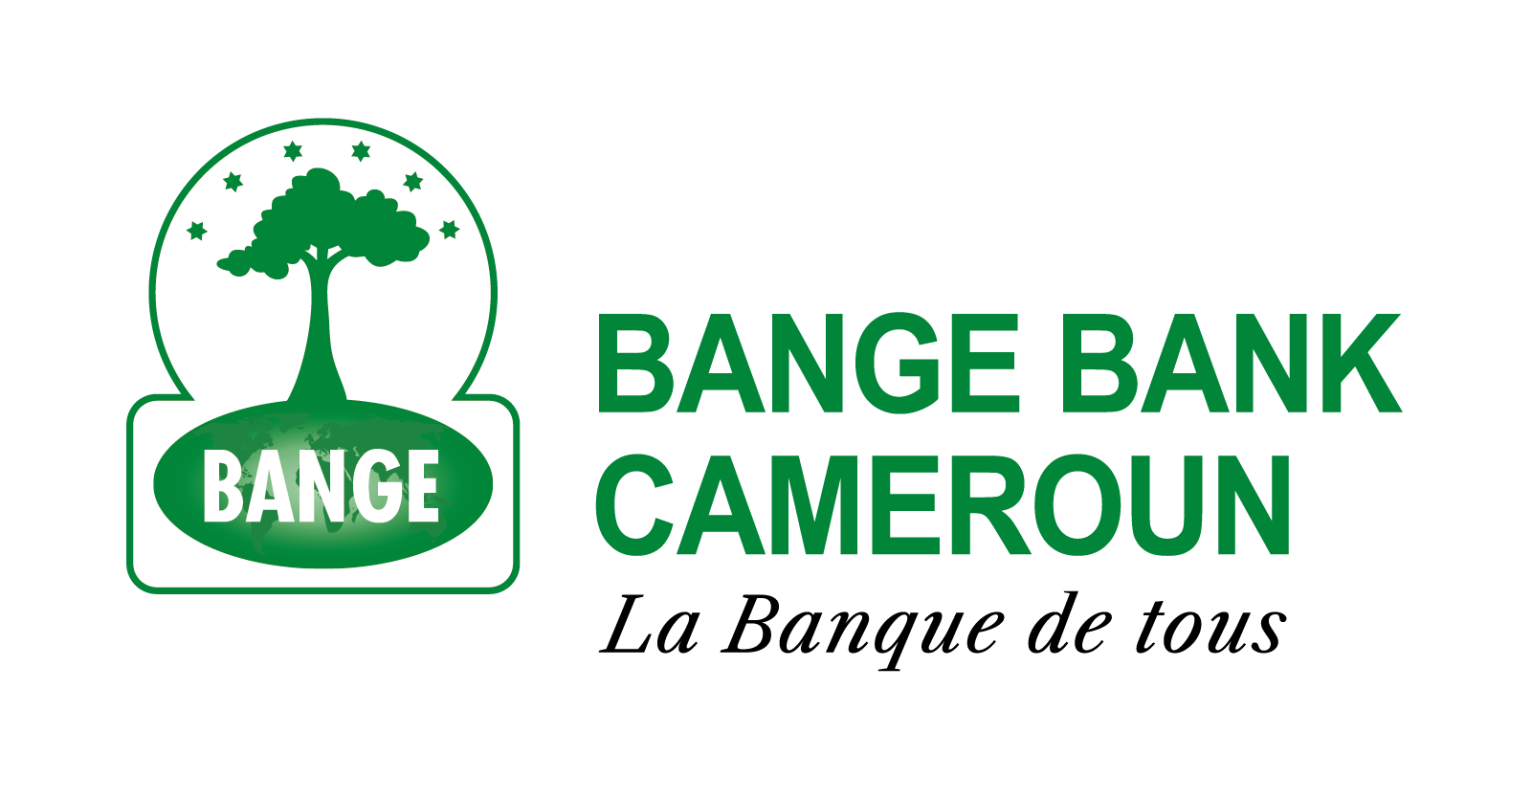 BANGE BANK CMR Logo